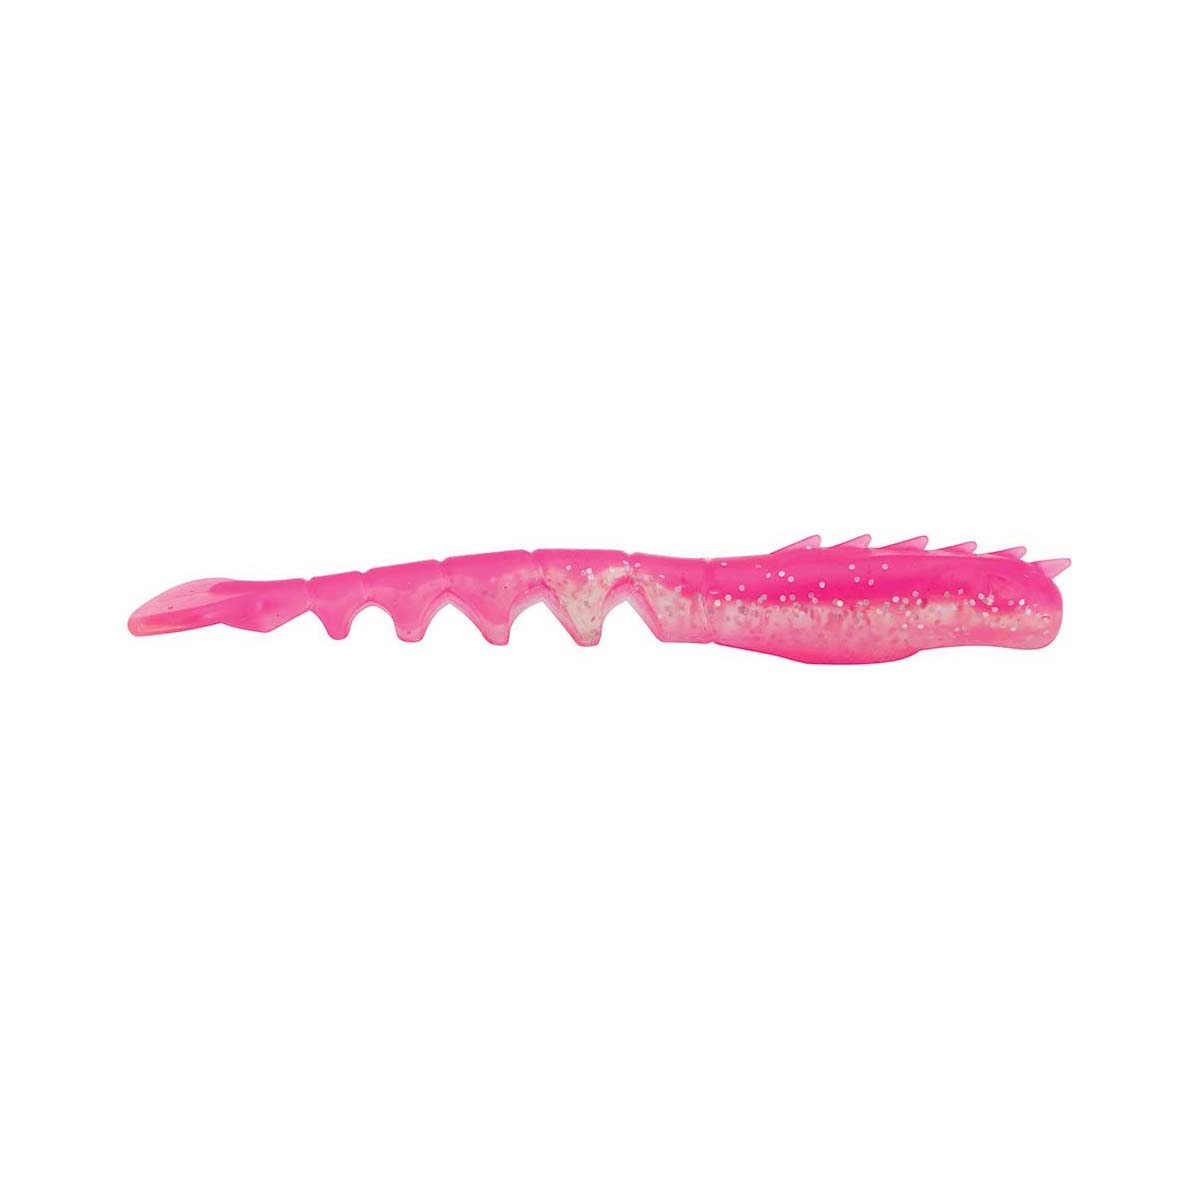 Berkley PowerBait Fan Tail Shrimp Soft Plastic Lure 3in Pink Glitter